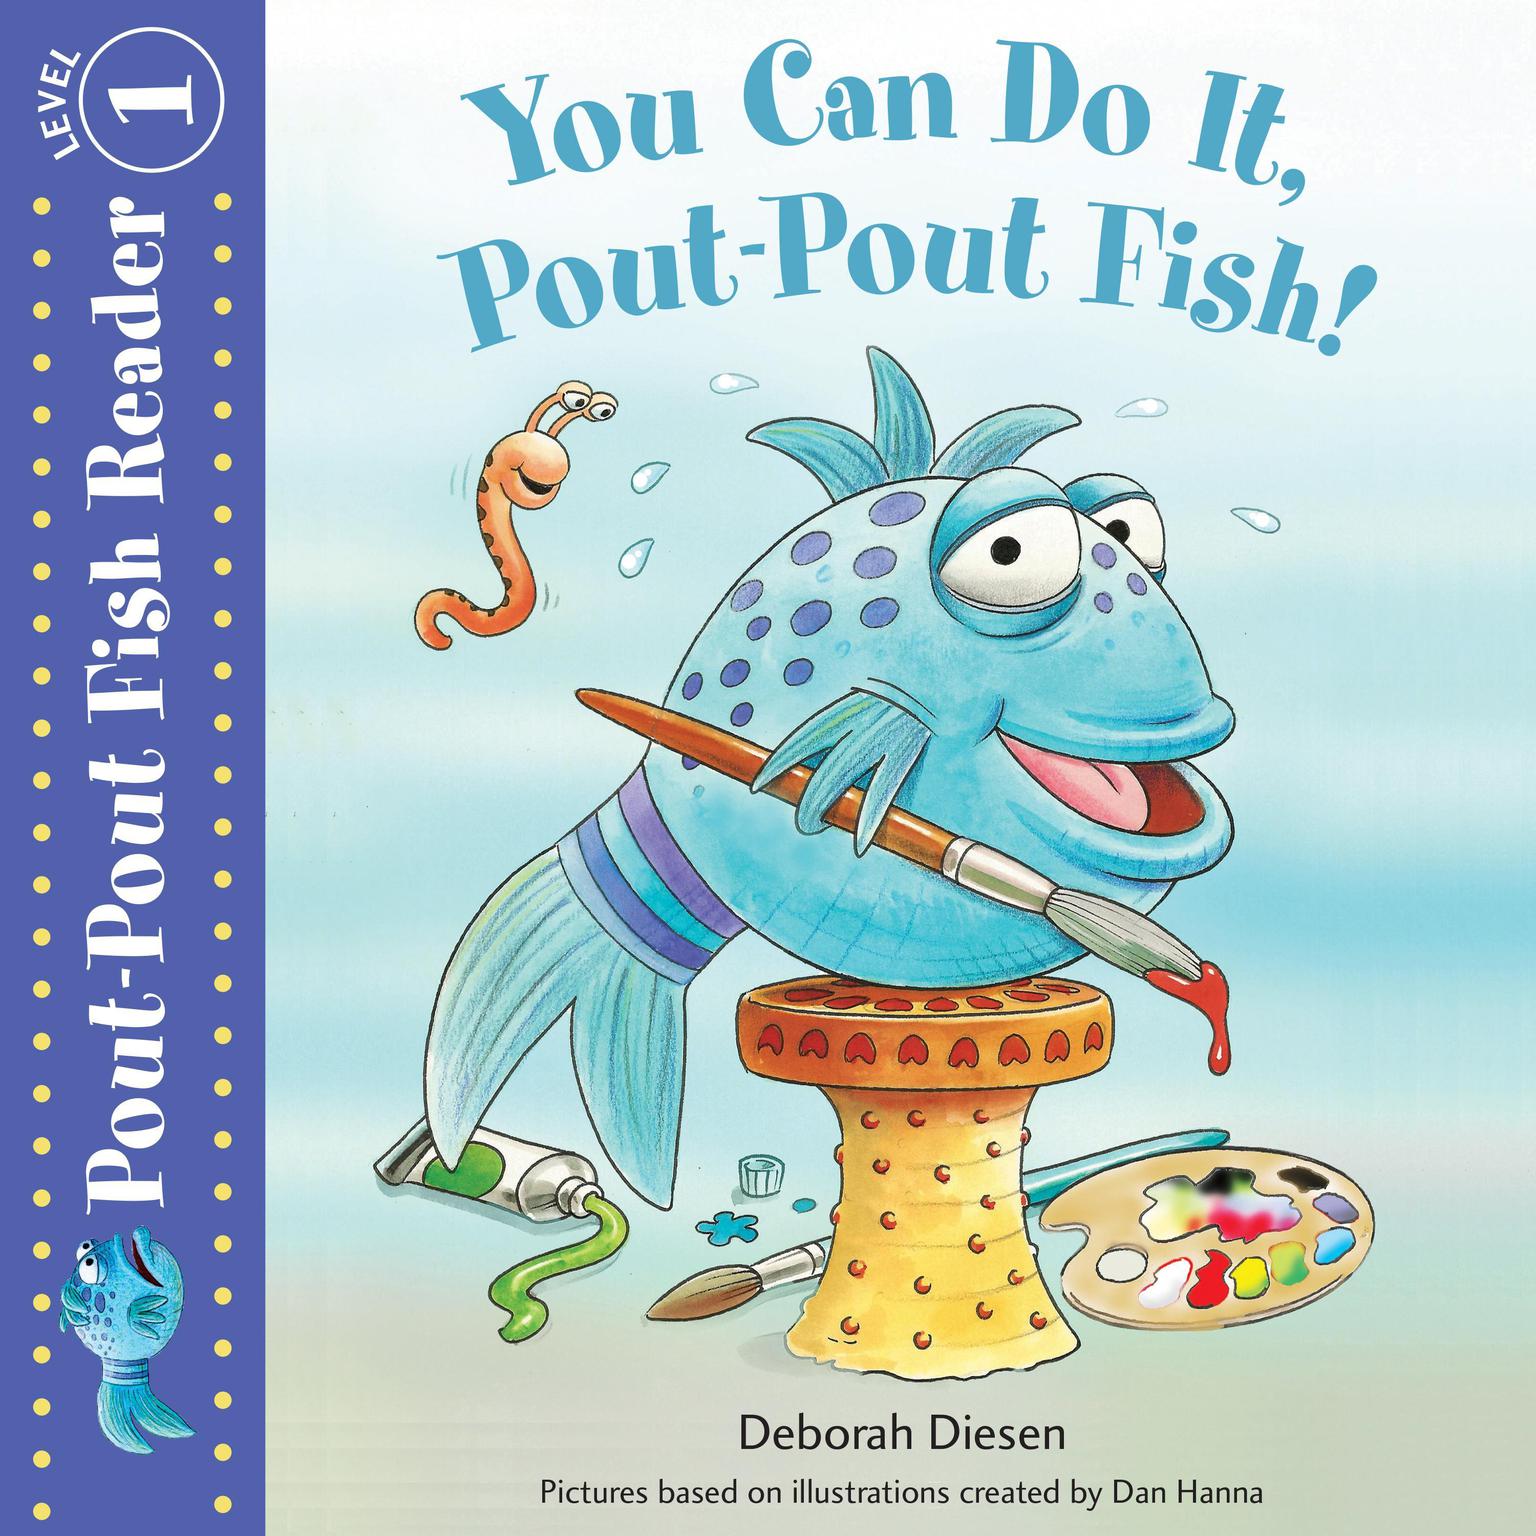 You Can Do It, Pout-Pout Fish! Audiobook, by Deborah Diesen